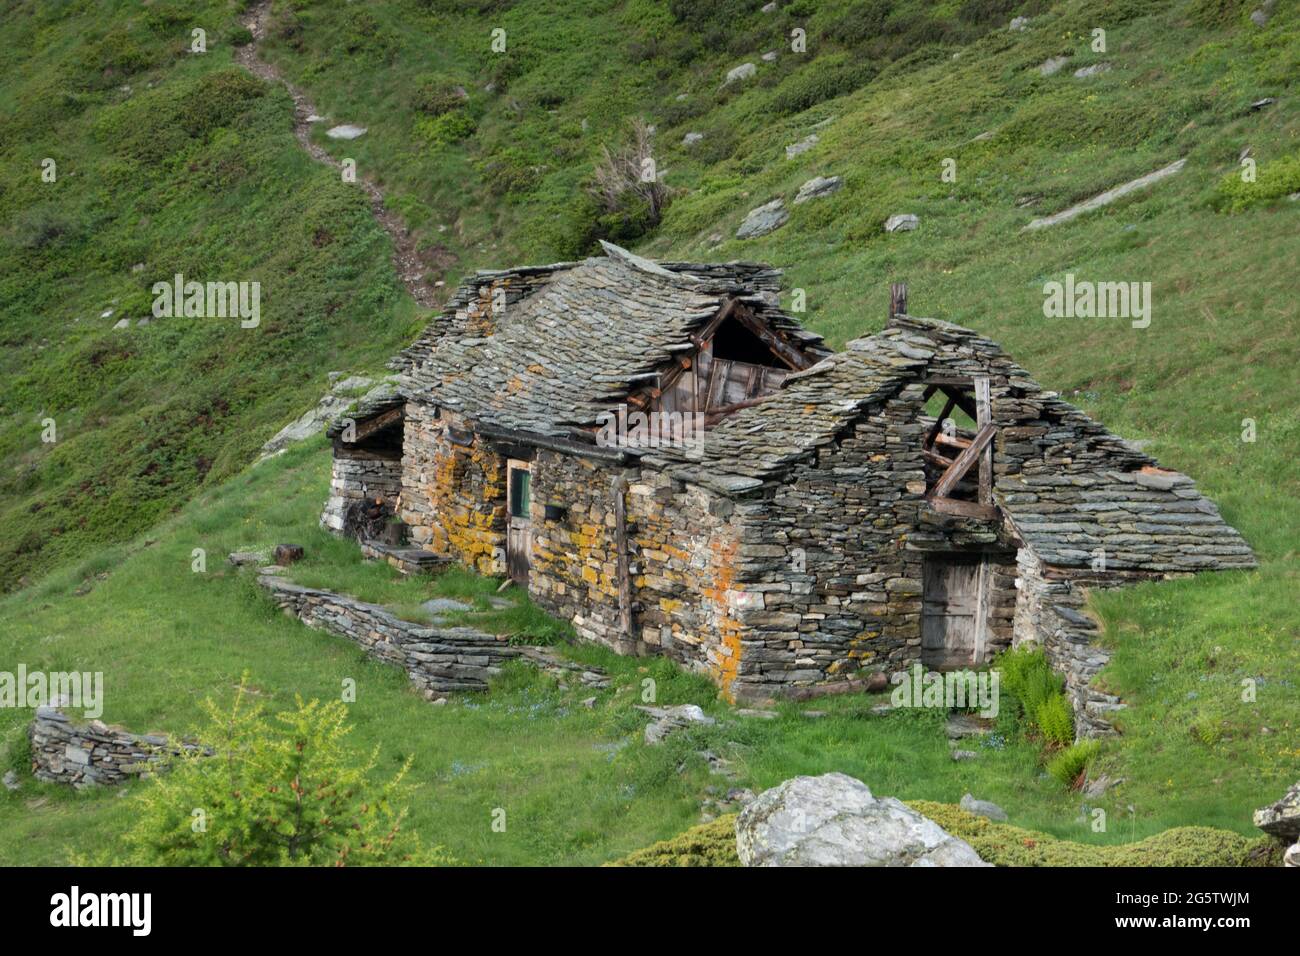 Ferme traditionnelle en ruine dans les Alpes italiennes Banque D'Images